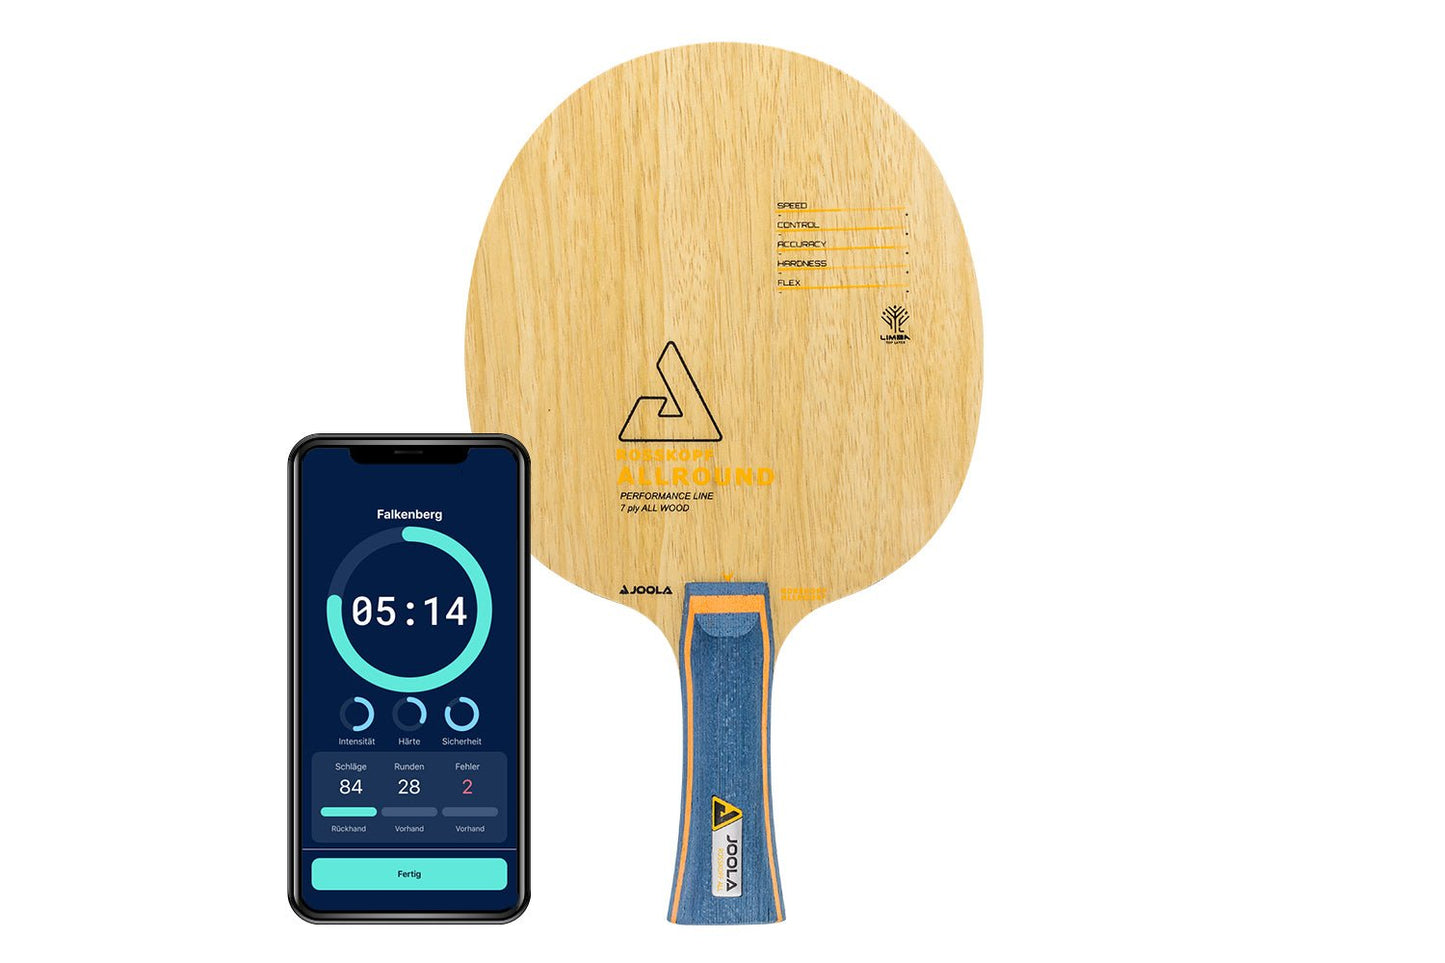 Joola Rosskopf Tischtennisschläger mit konkaven Griff und Smartphone zeigt Daten des Schlägers vor weißem Hintergrund